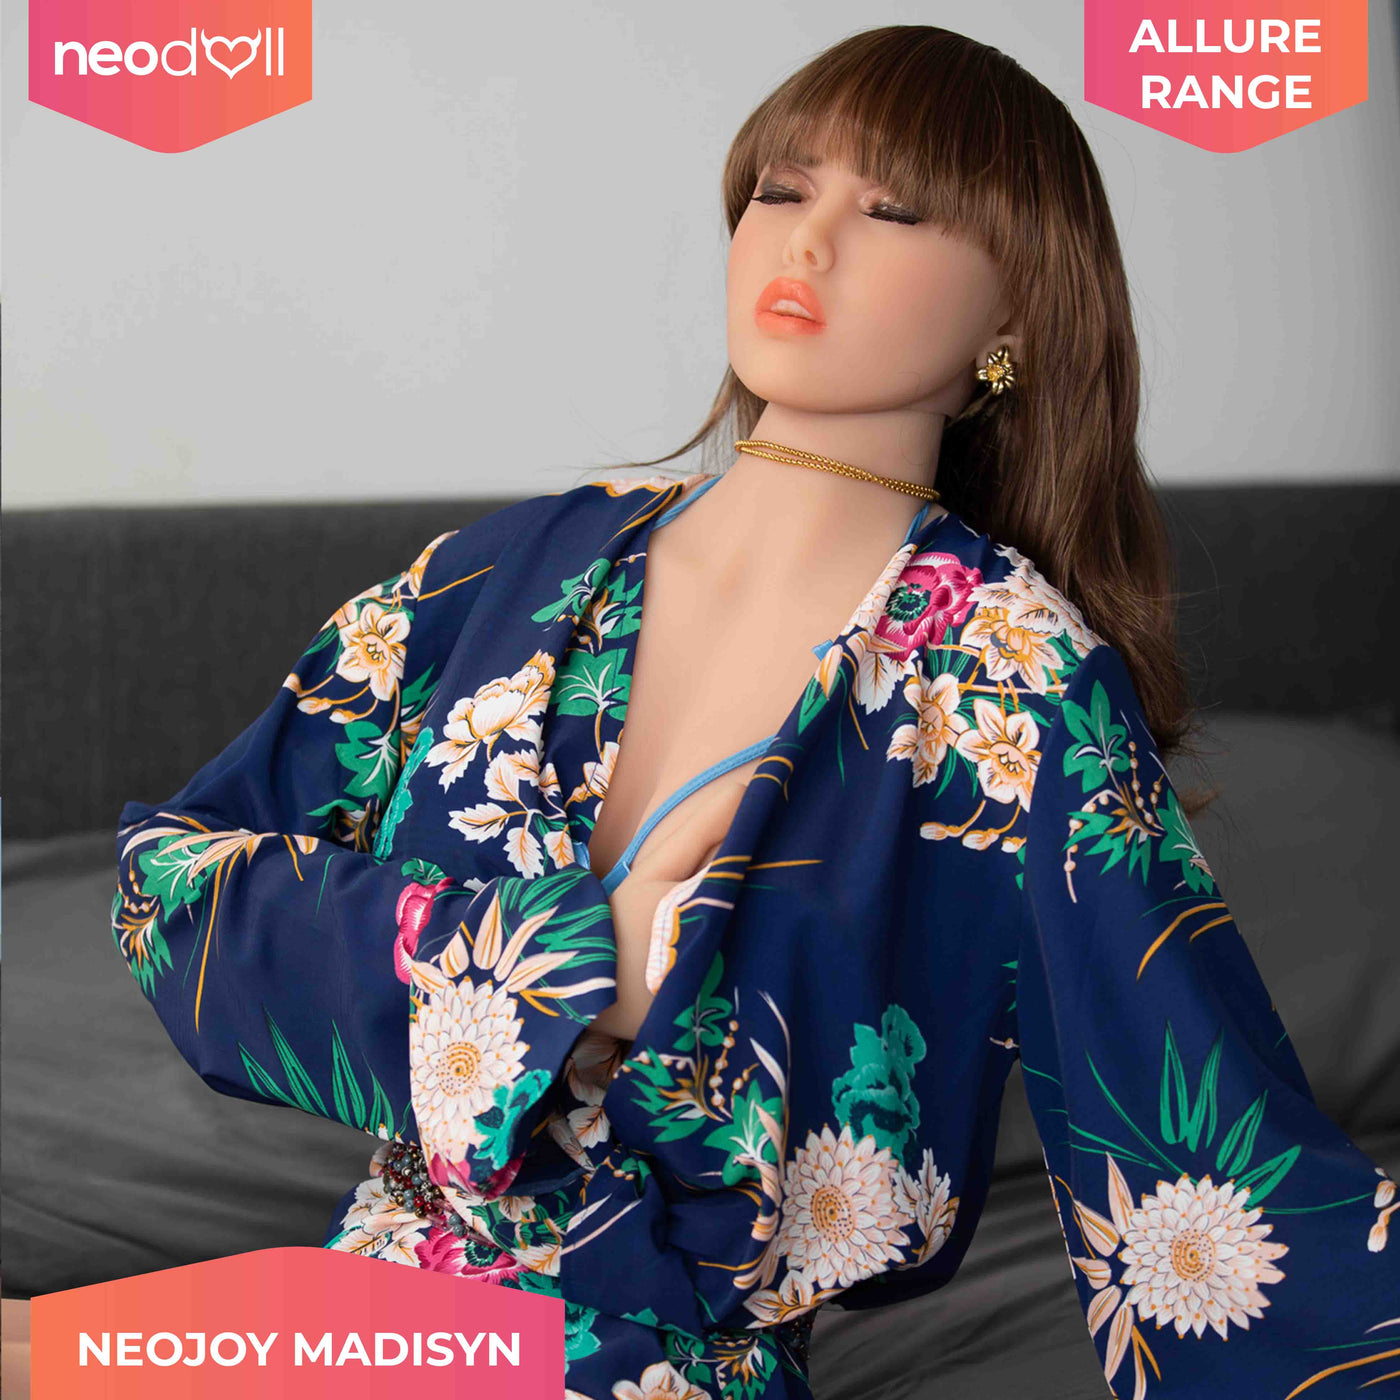 Neodoll Allure - Madisyn - Realistic Sex Doll - 166cm